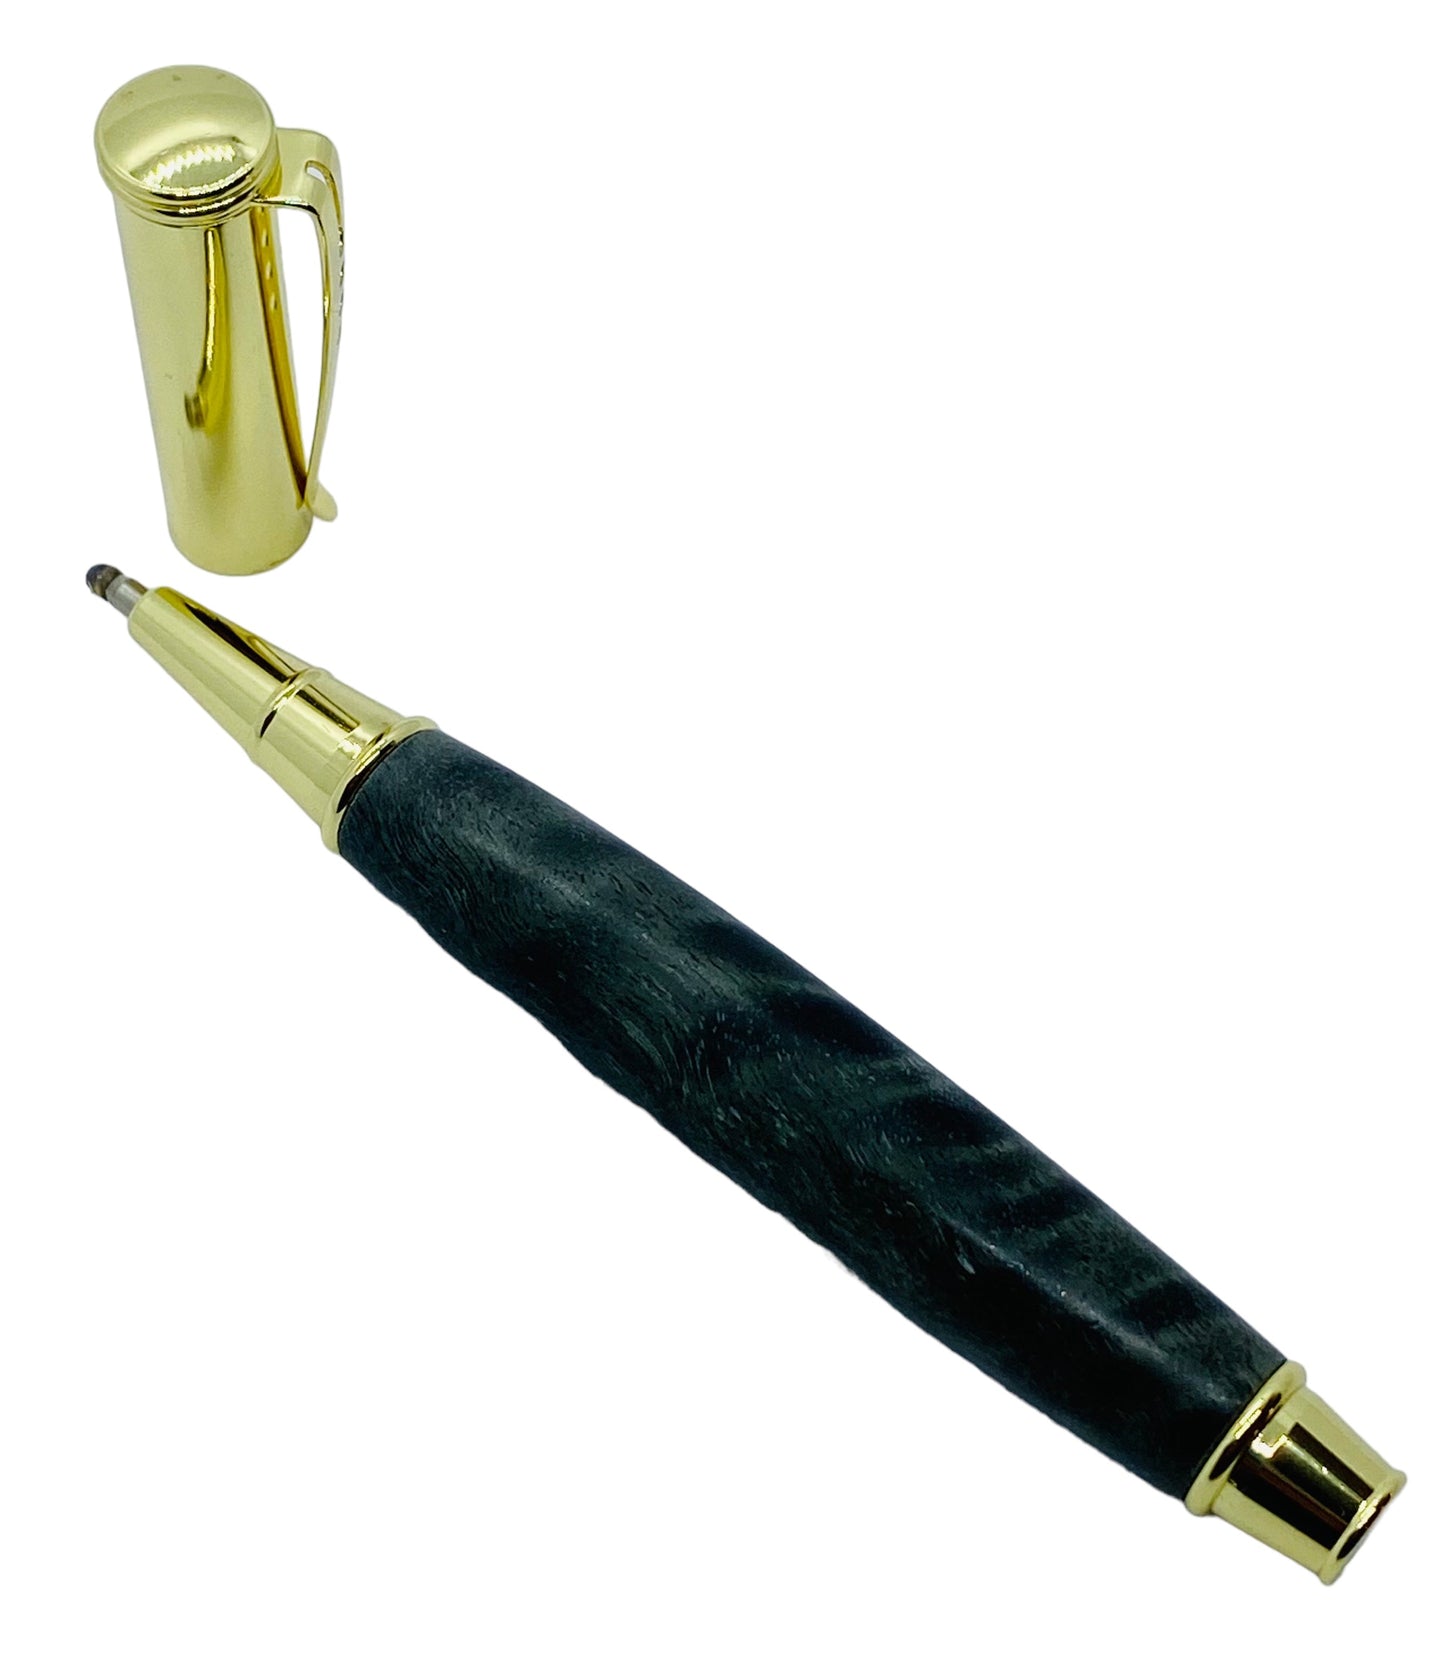 Gold-Snap cap editor pen kit